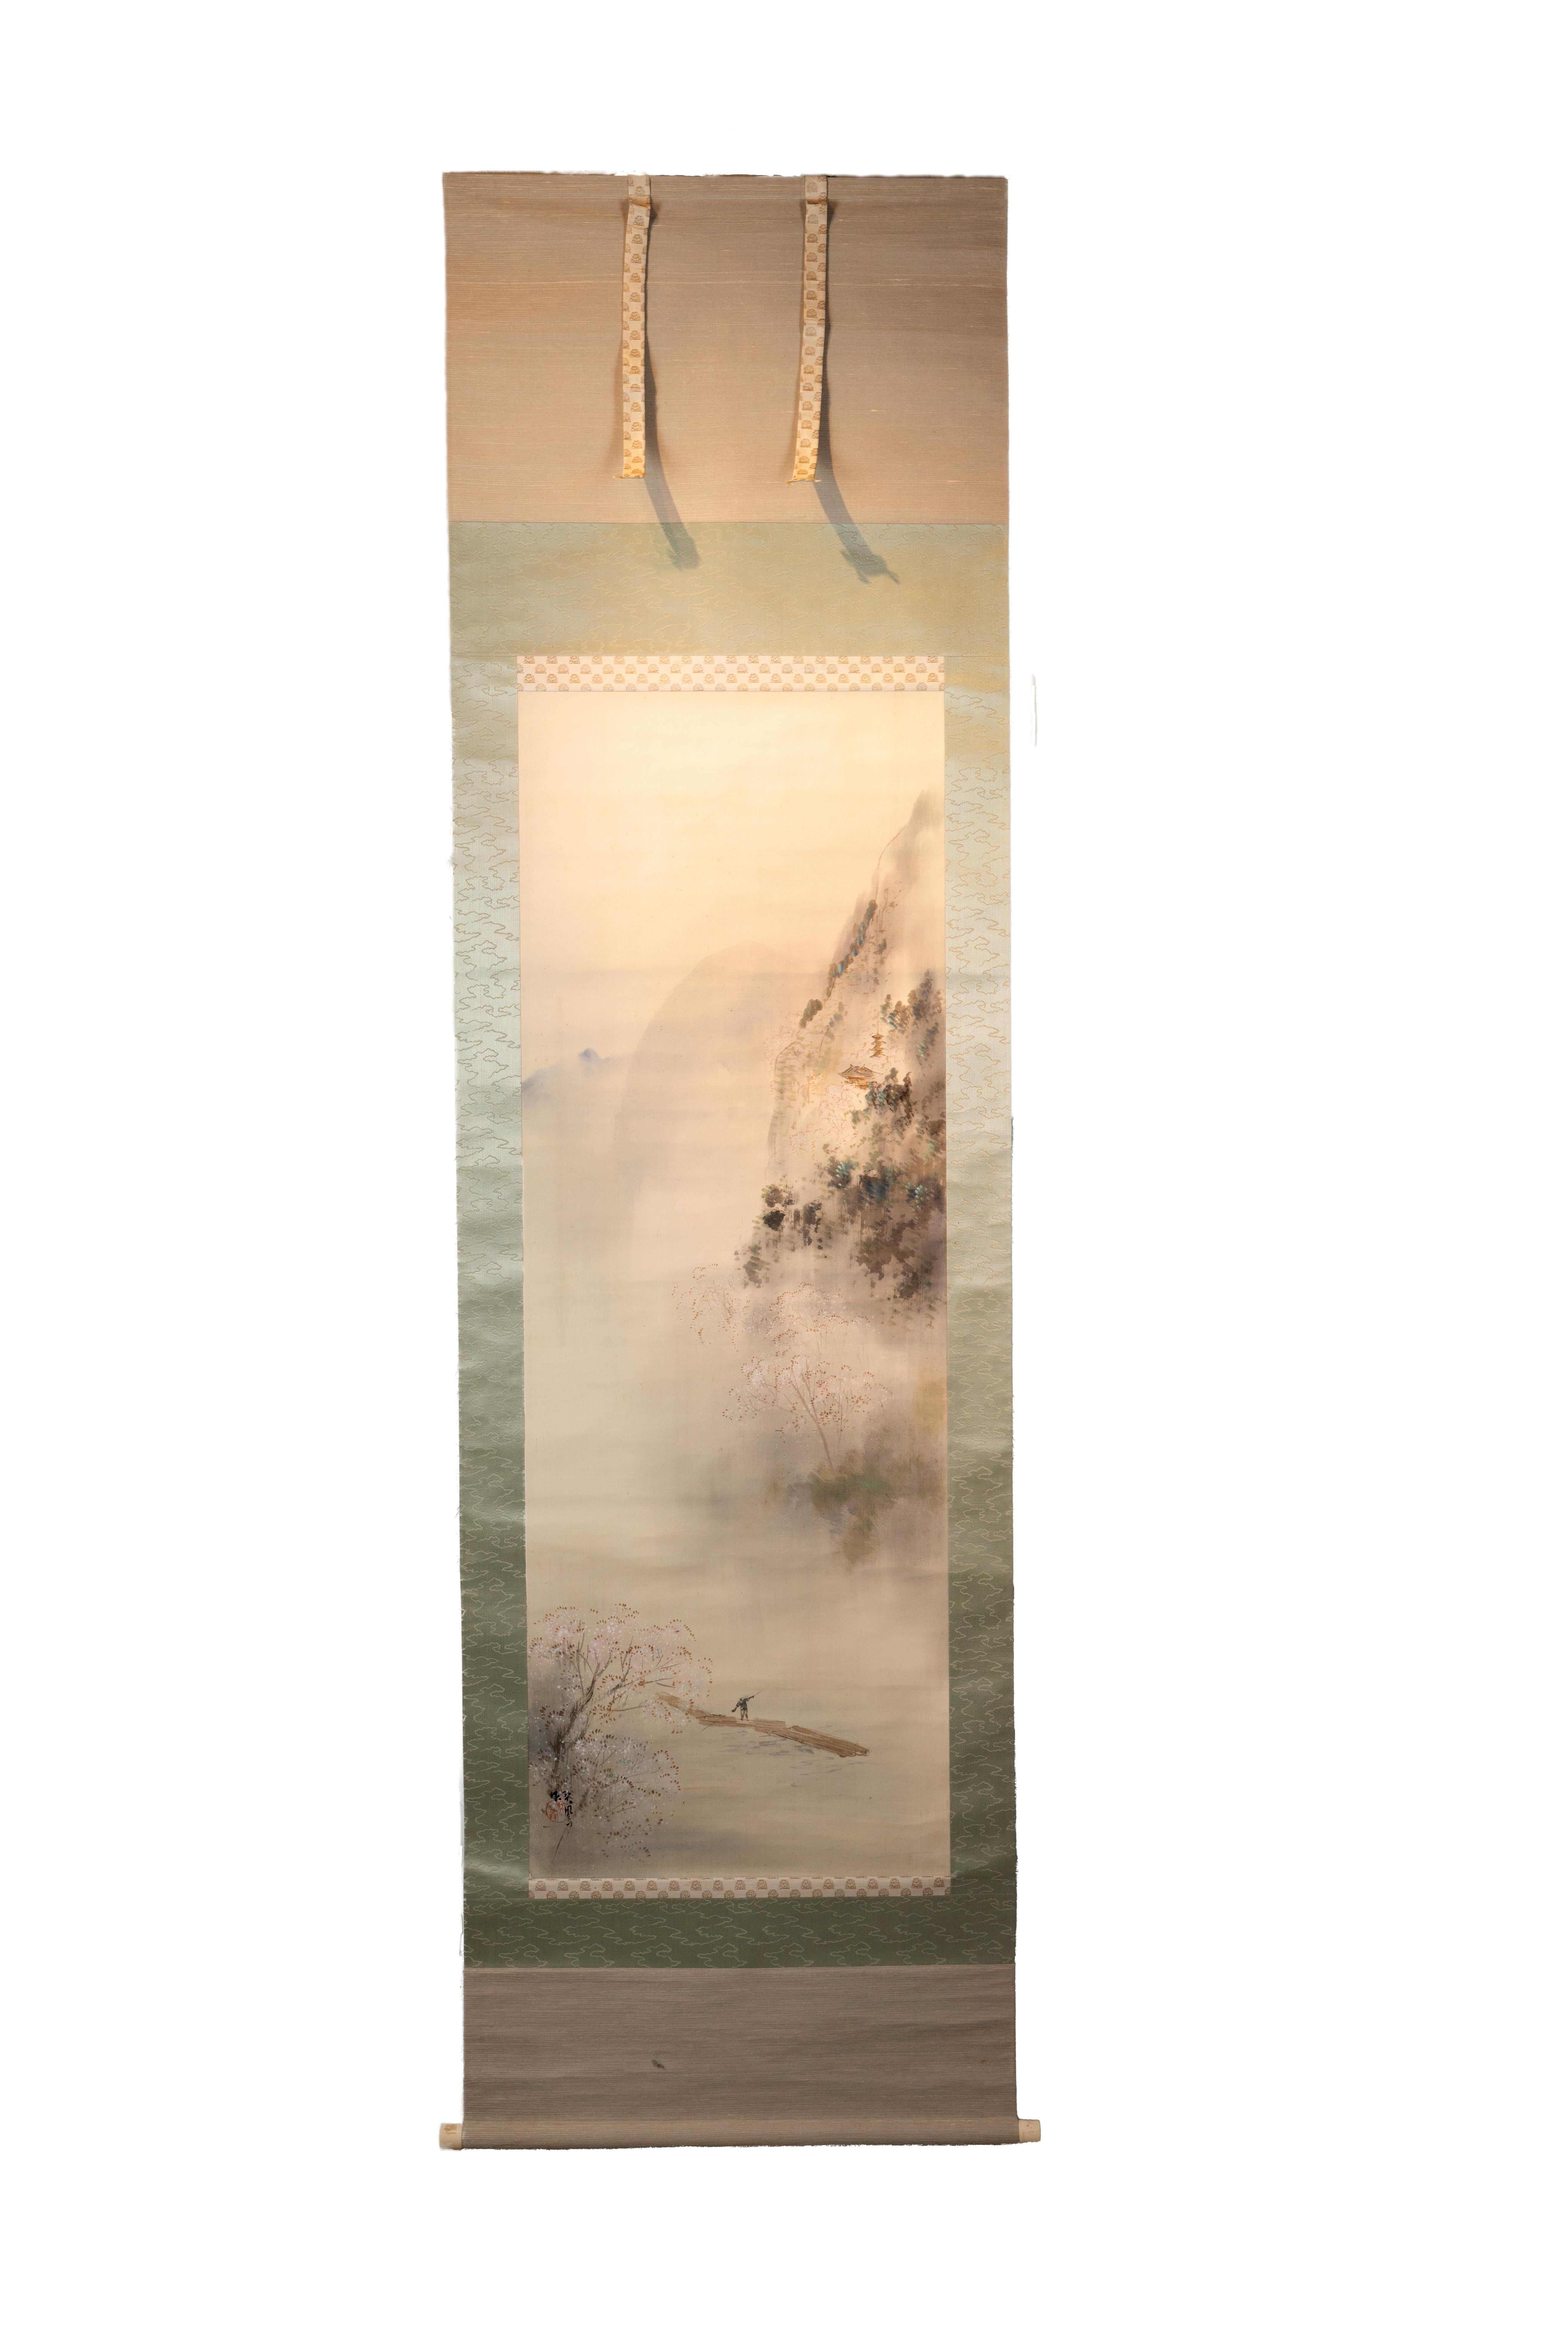 Ce rouleau ancien japonais de 77" x 22" représente un paysage serein et brumeux peint sur soie avec une figure placée dans la moitié inférieure de la composition. Le personnage se tient sur ce qui semble être un radeau ou un pont sur une étendue